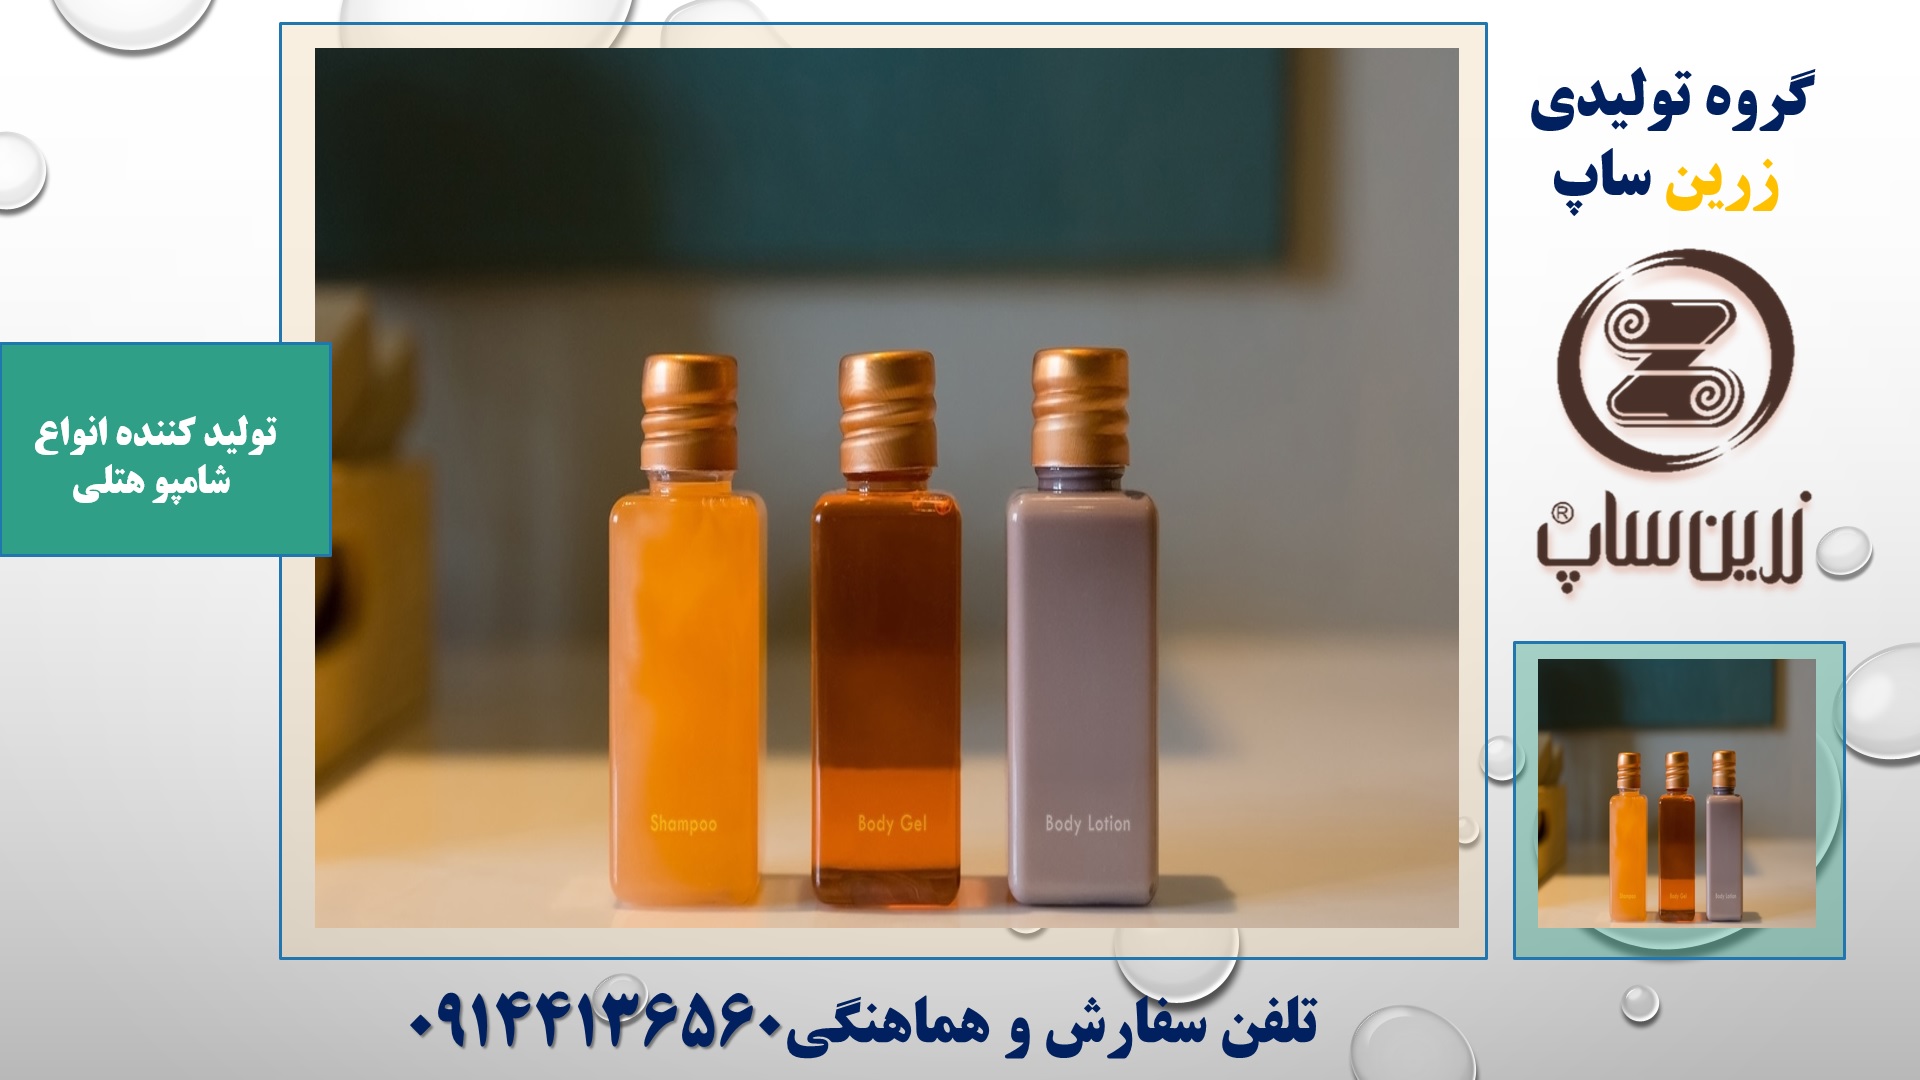 فروش شامپو هتلی در ایران